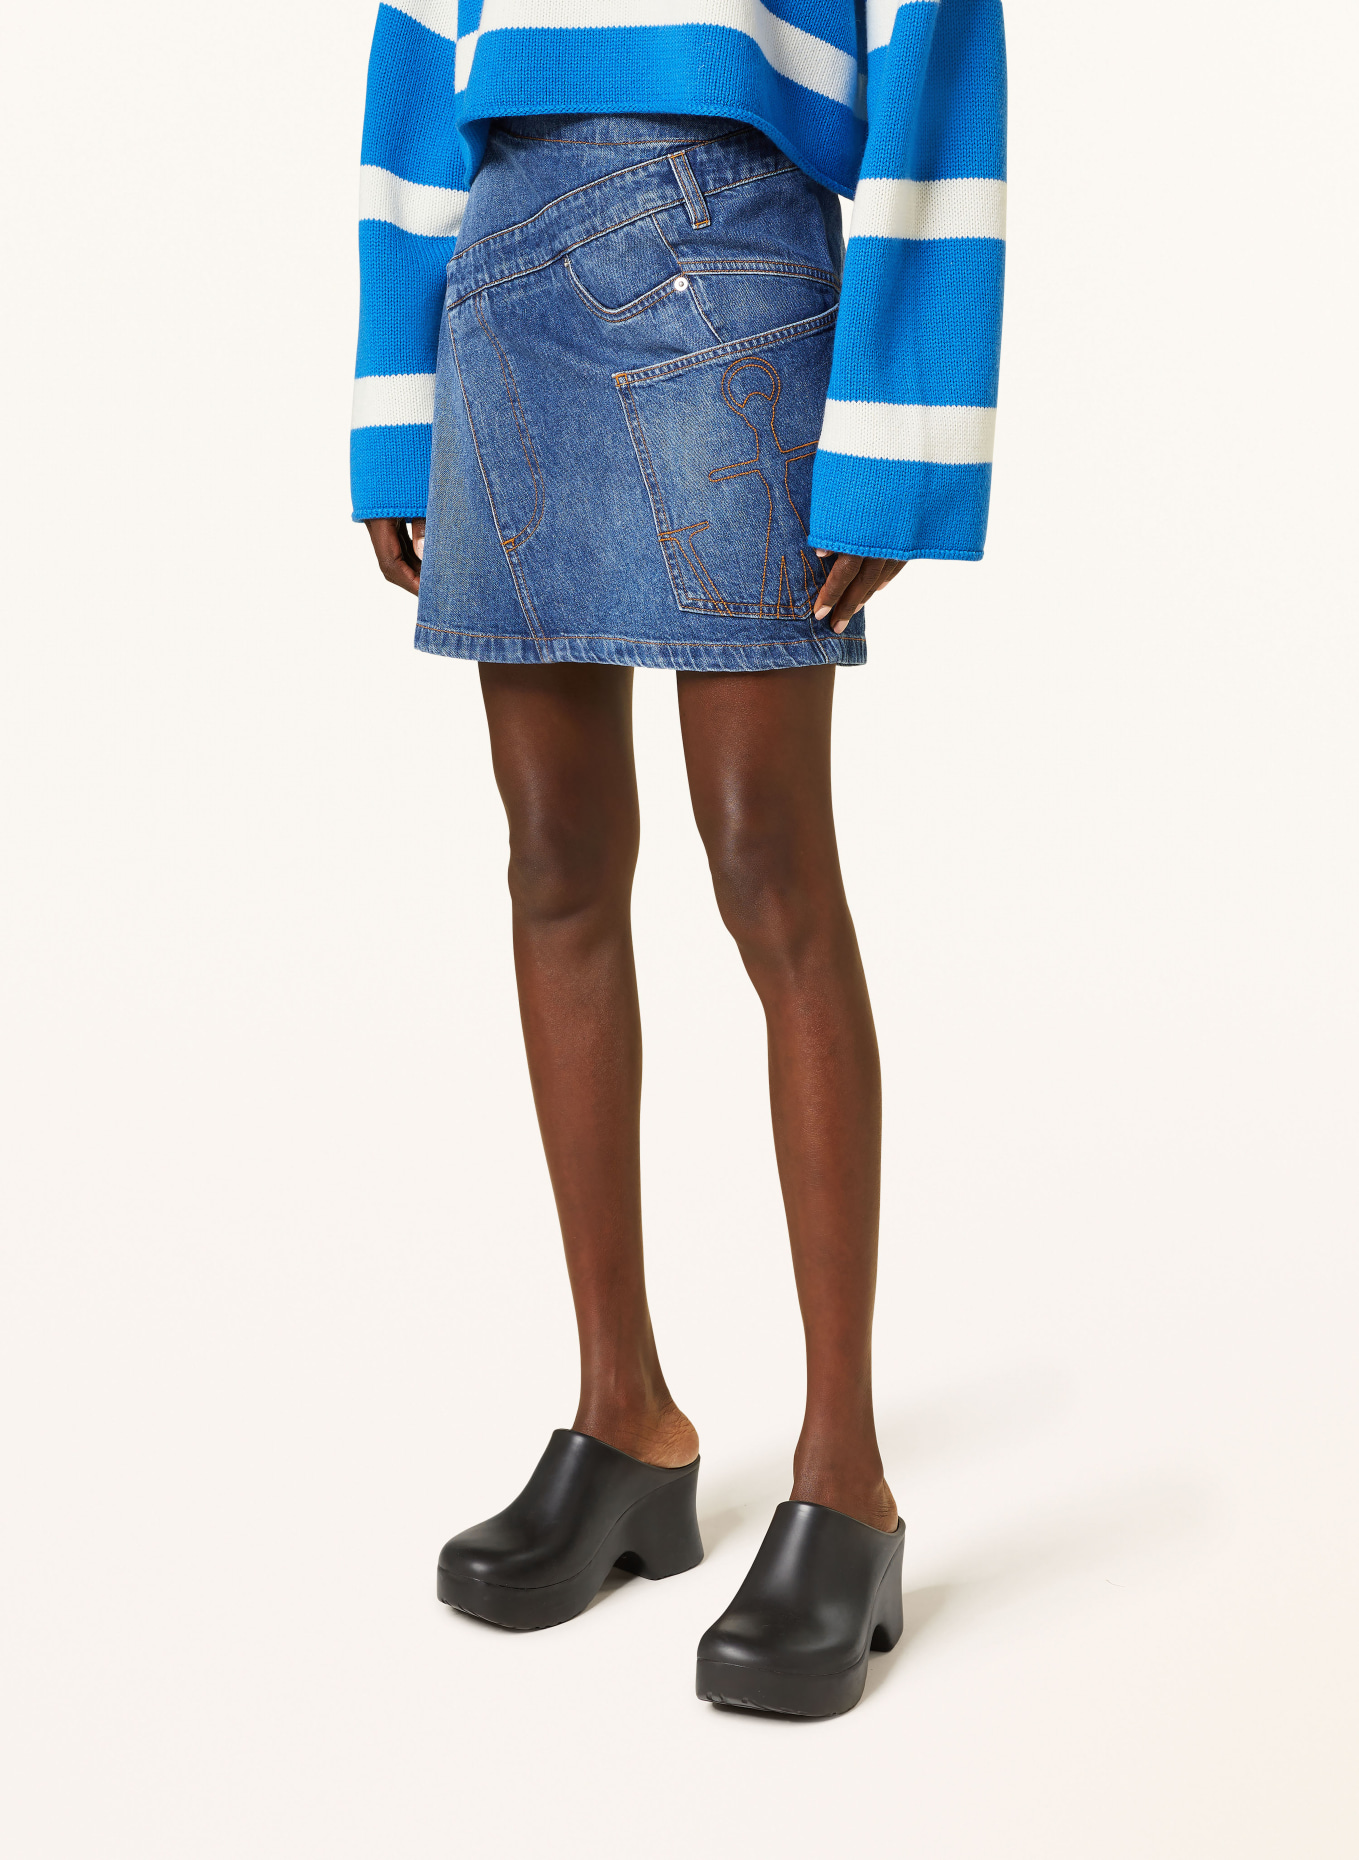 JW ANDERSON Denim skirt, Color: 804 light blue (Image 4)